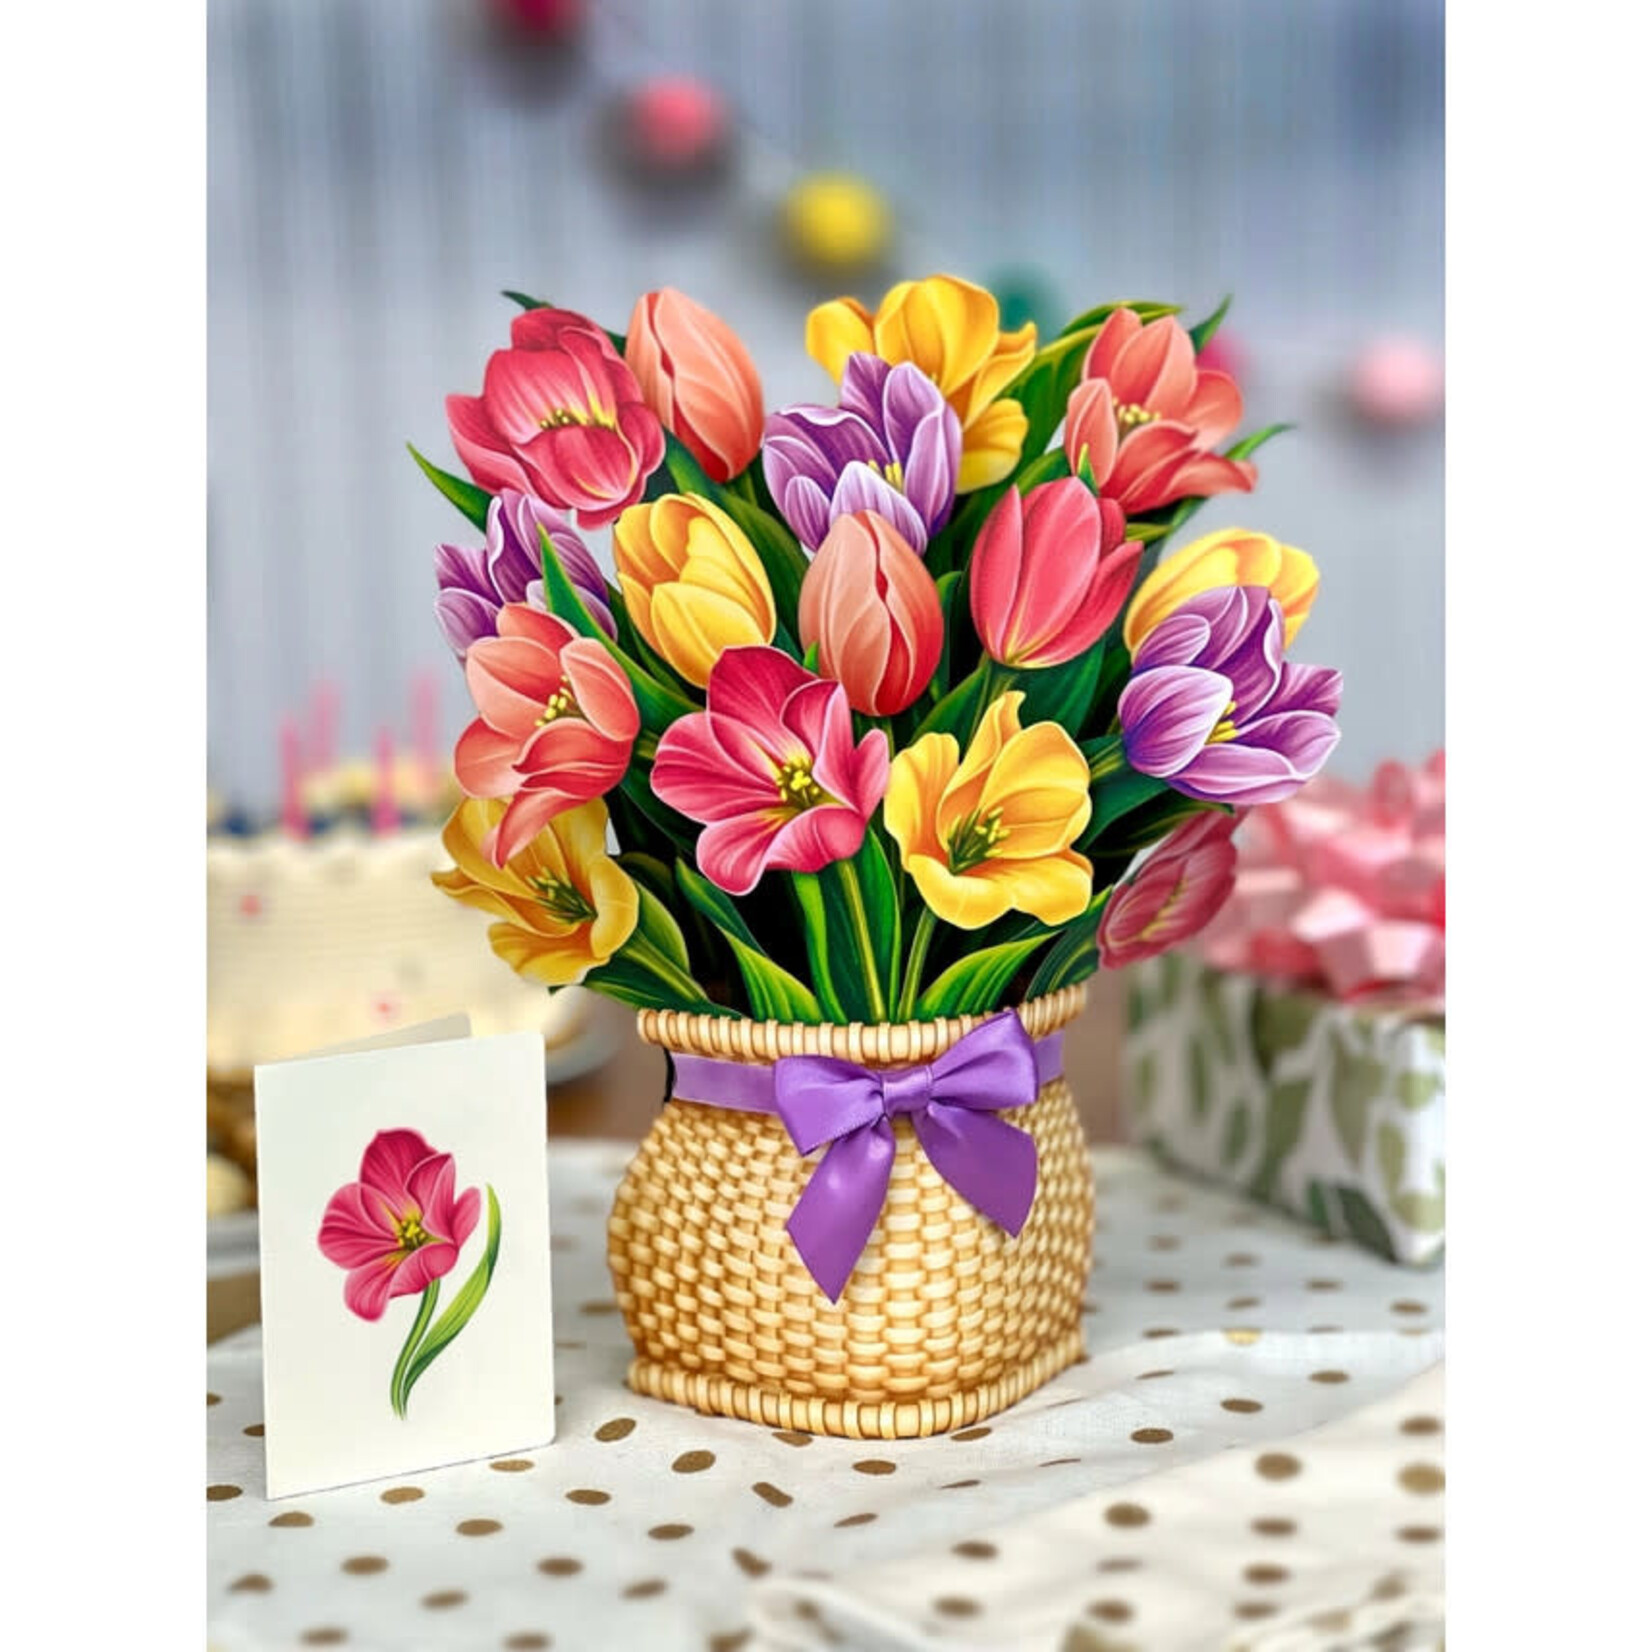 Freshcut Paper Festive Tulips Paper Bouquet